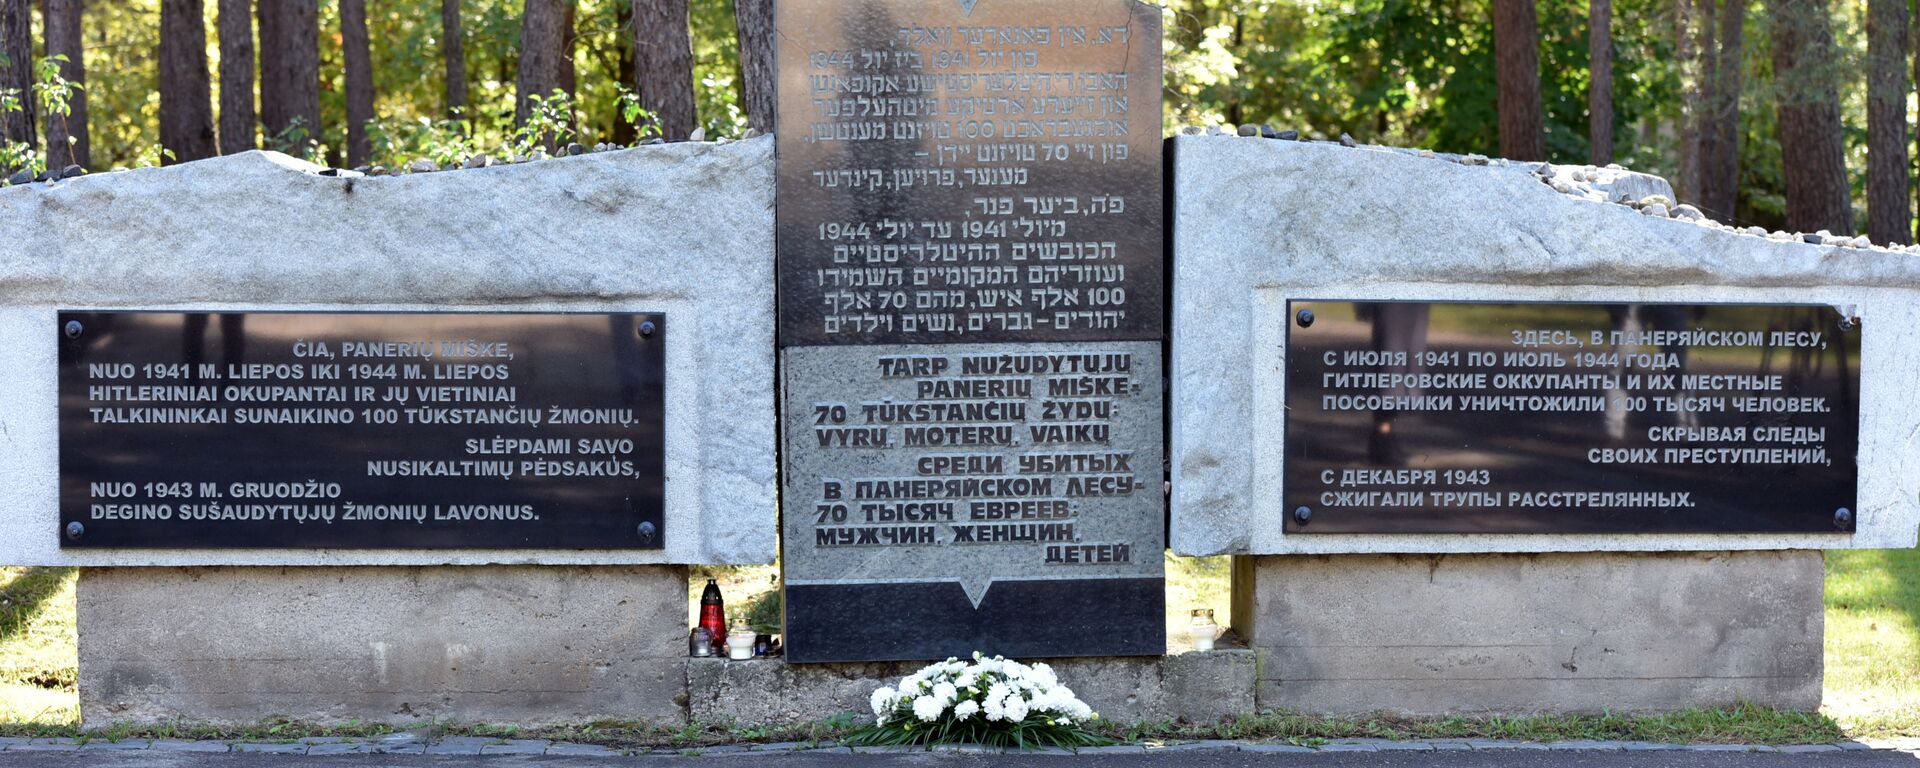 День памяти жертв Холокоста в Вильнюсе - Sputnik Lietuva, 1920, 24.03.2021